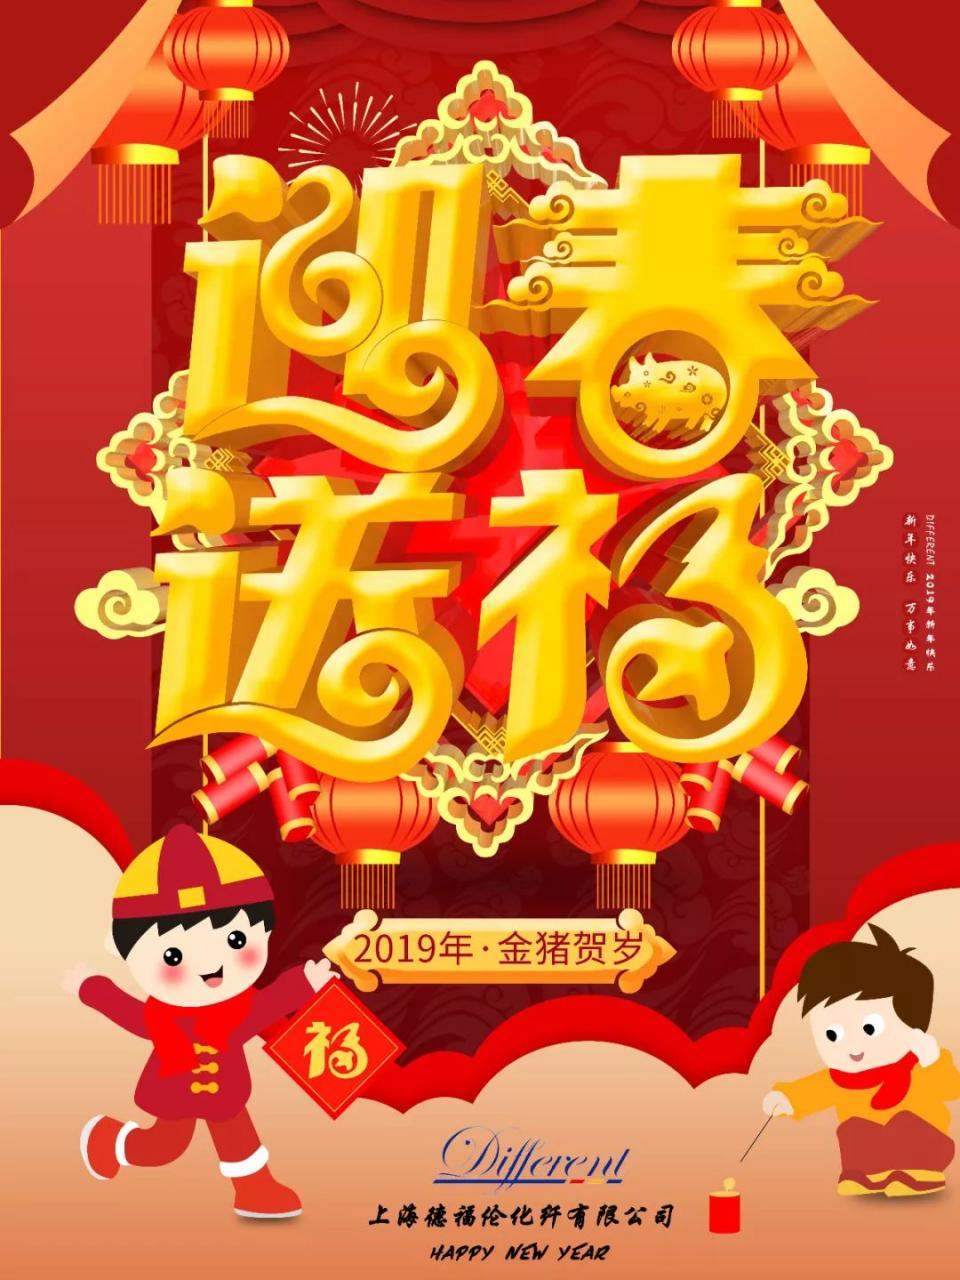 上海德福伦化纤有限公司丨祝您2019新年快乐-上海德福伦新材料科技有限公司